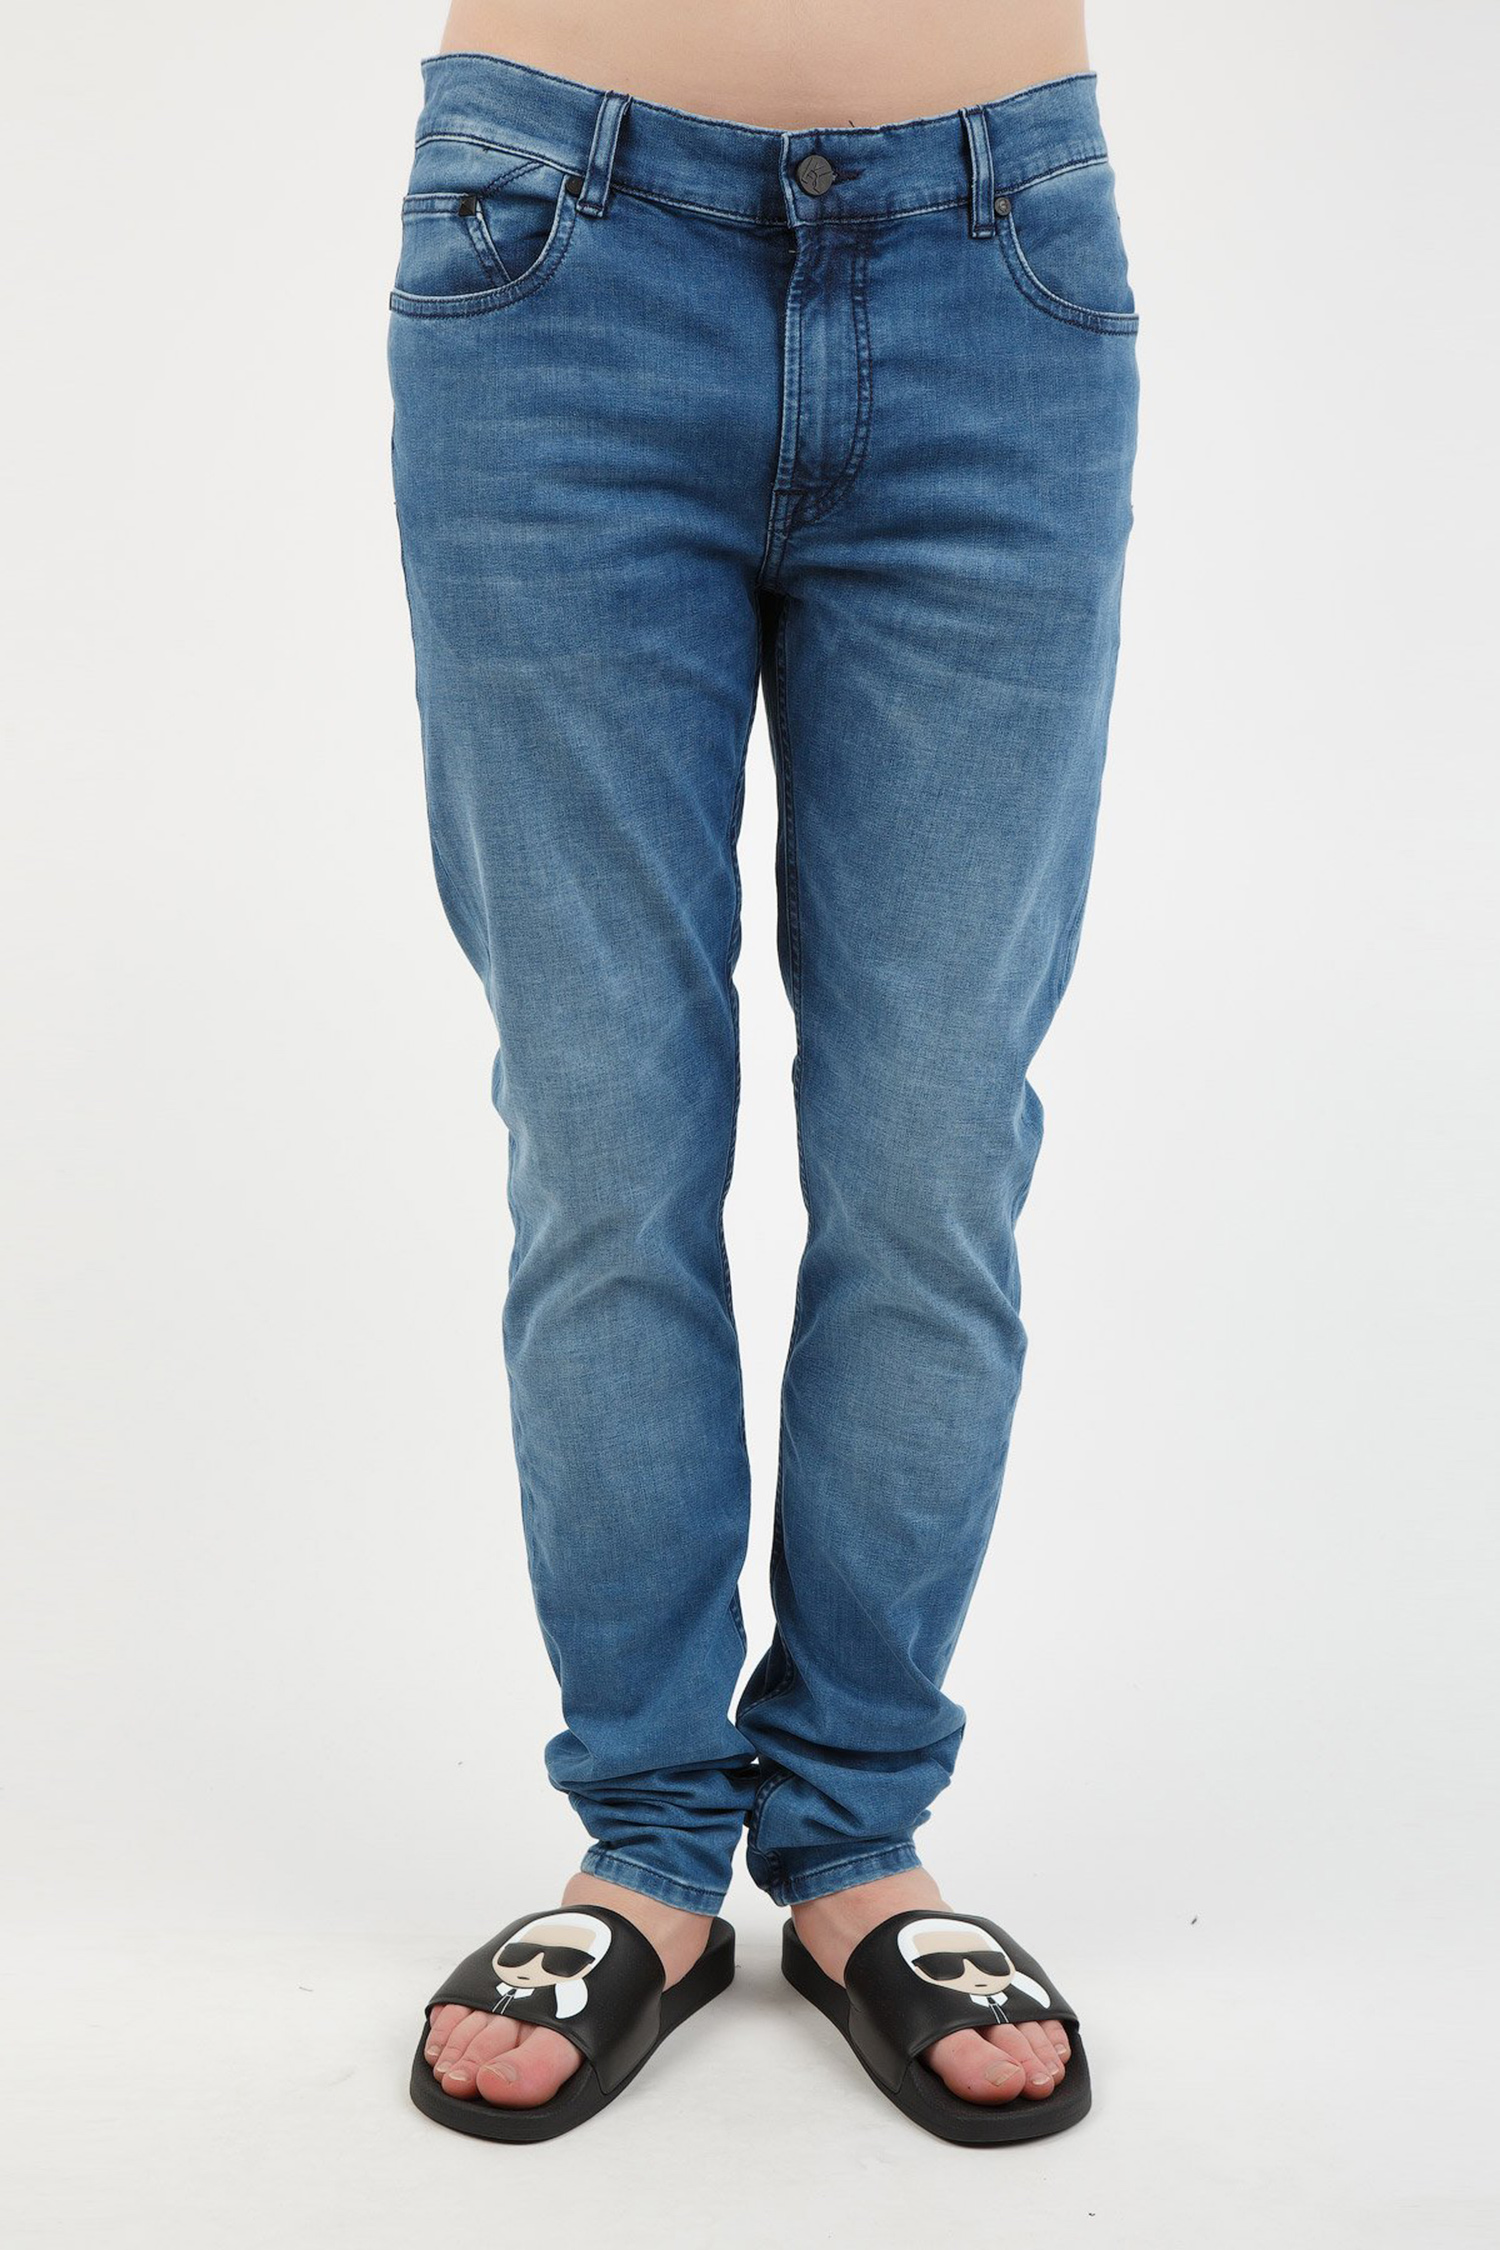 Чоловічі сині джинси Karl Lagerfeld 501833.265801;620